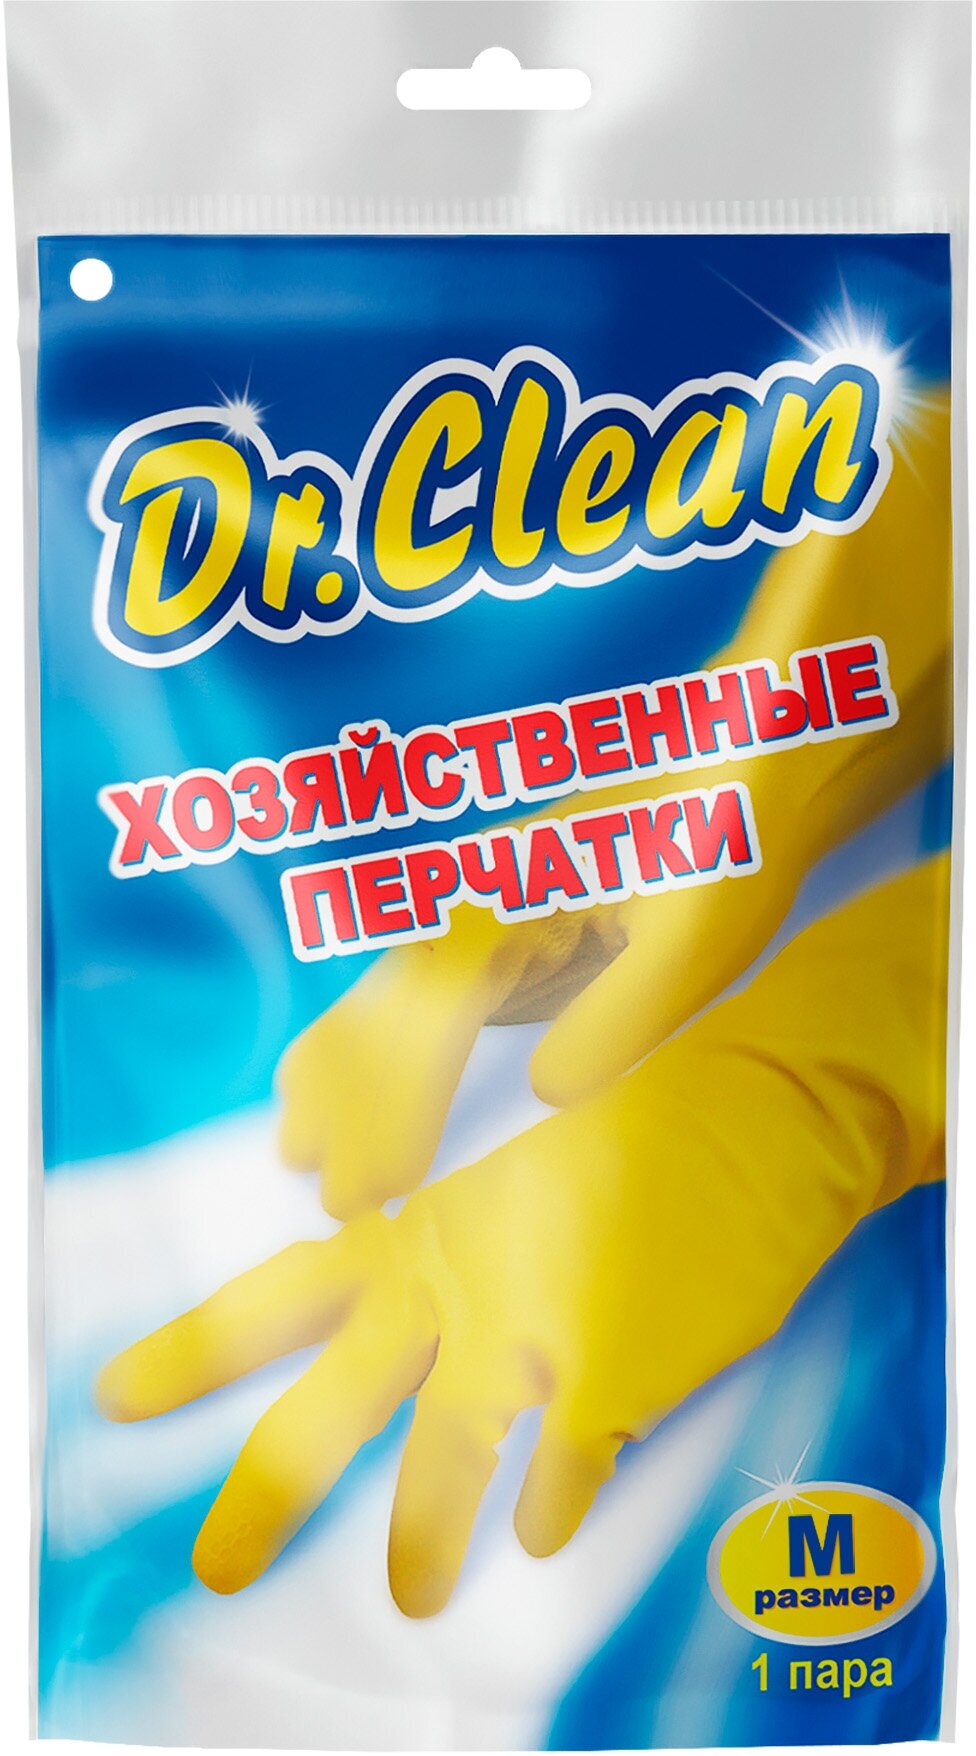 Перчатки хозяйственные латексные Dr. Clean резиновые для уборки, размер M